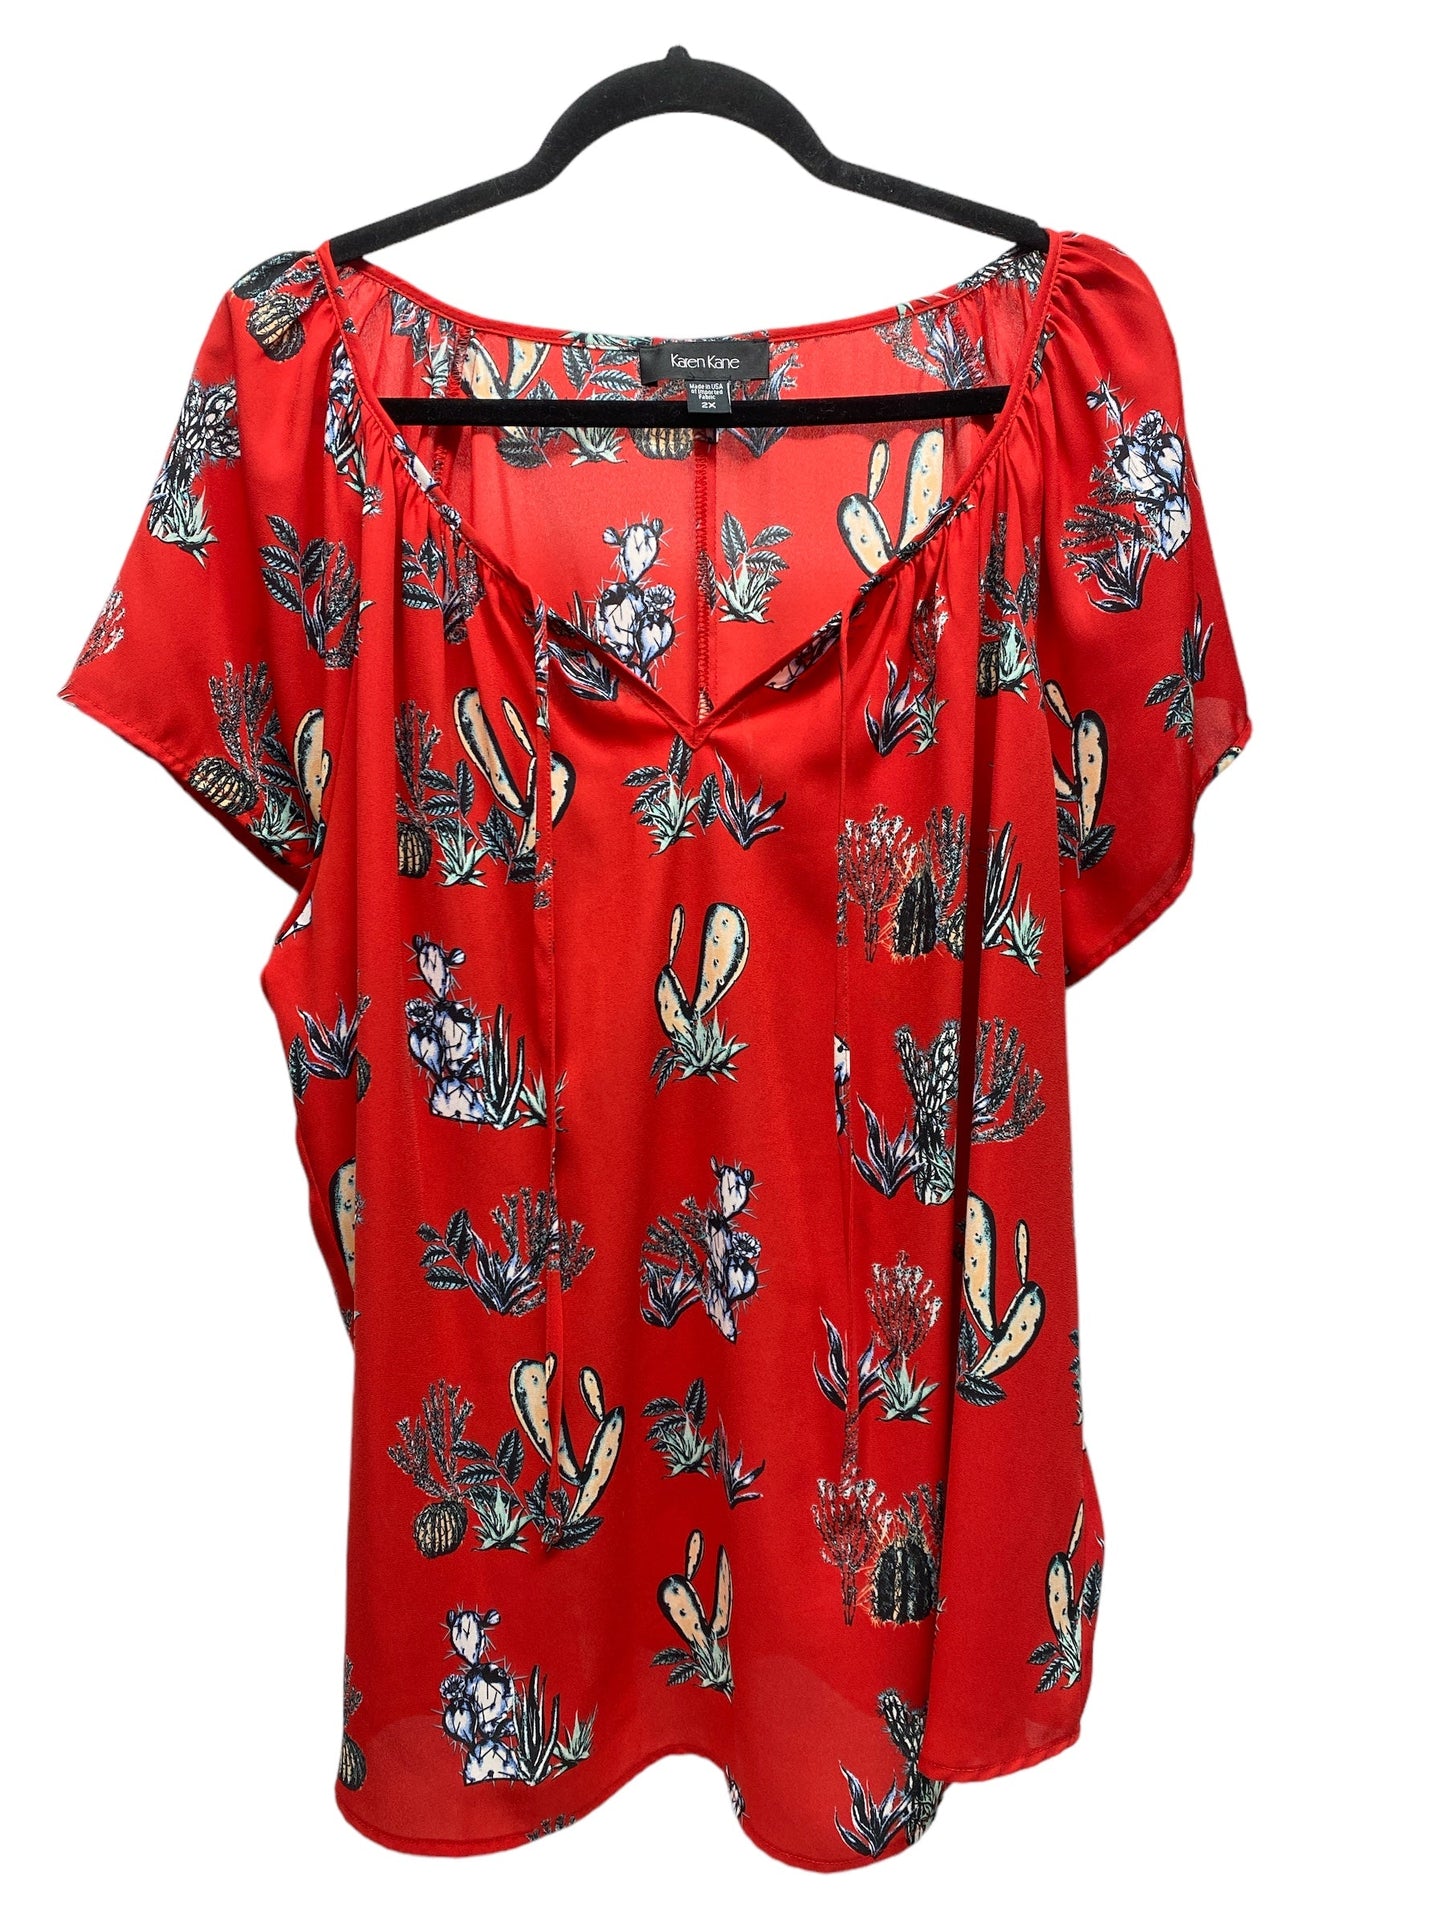 Black & Red Top Short Sleeve Karen Kane, Size 2x